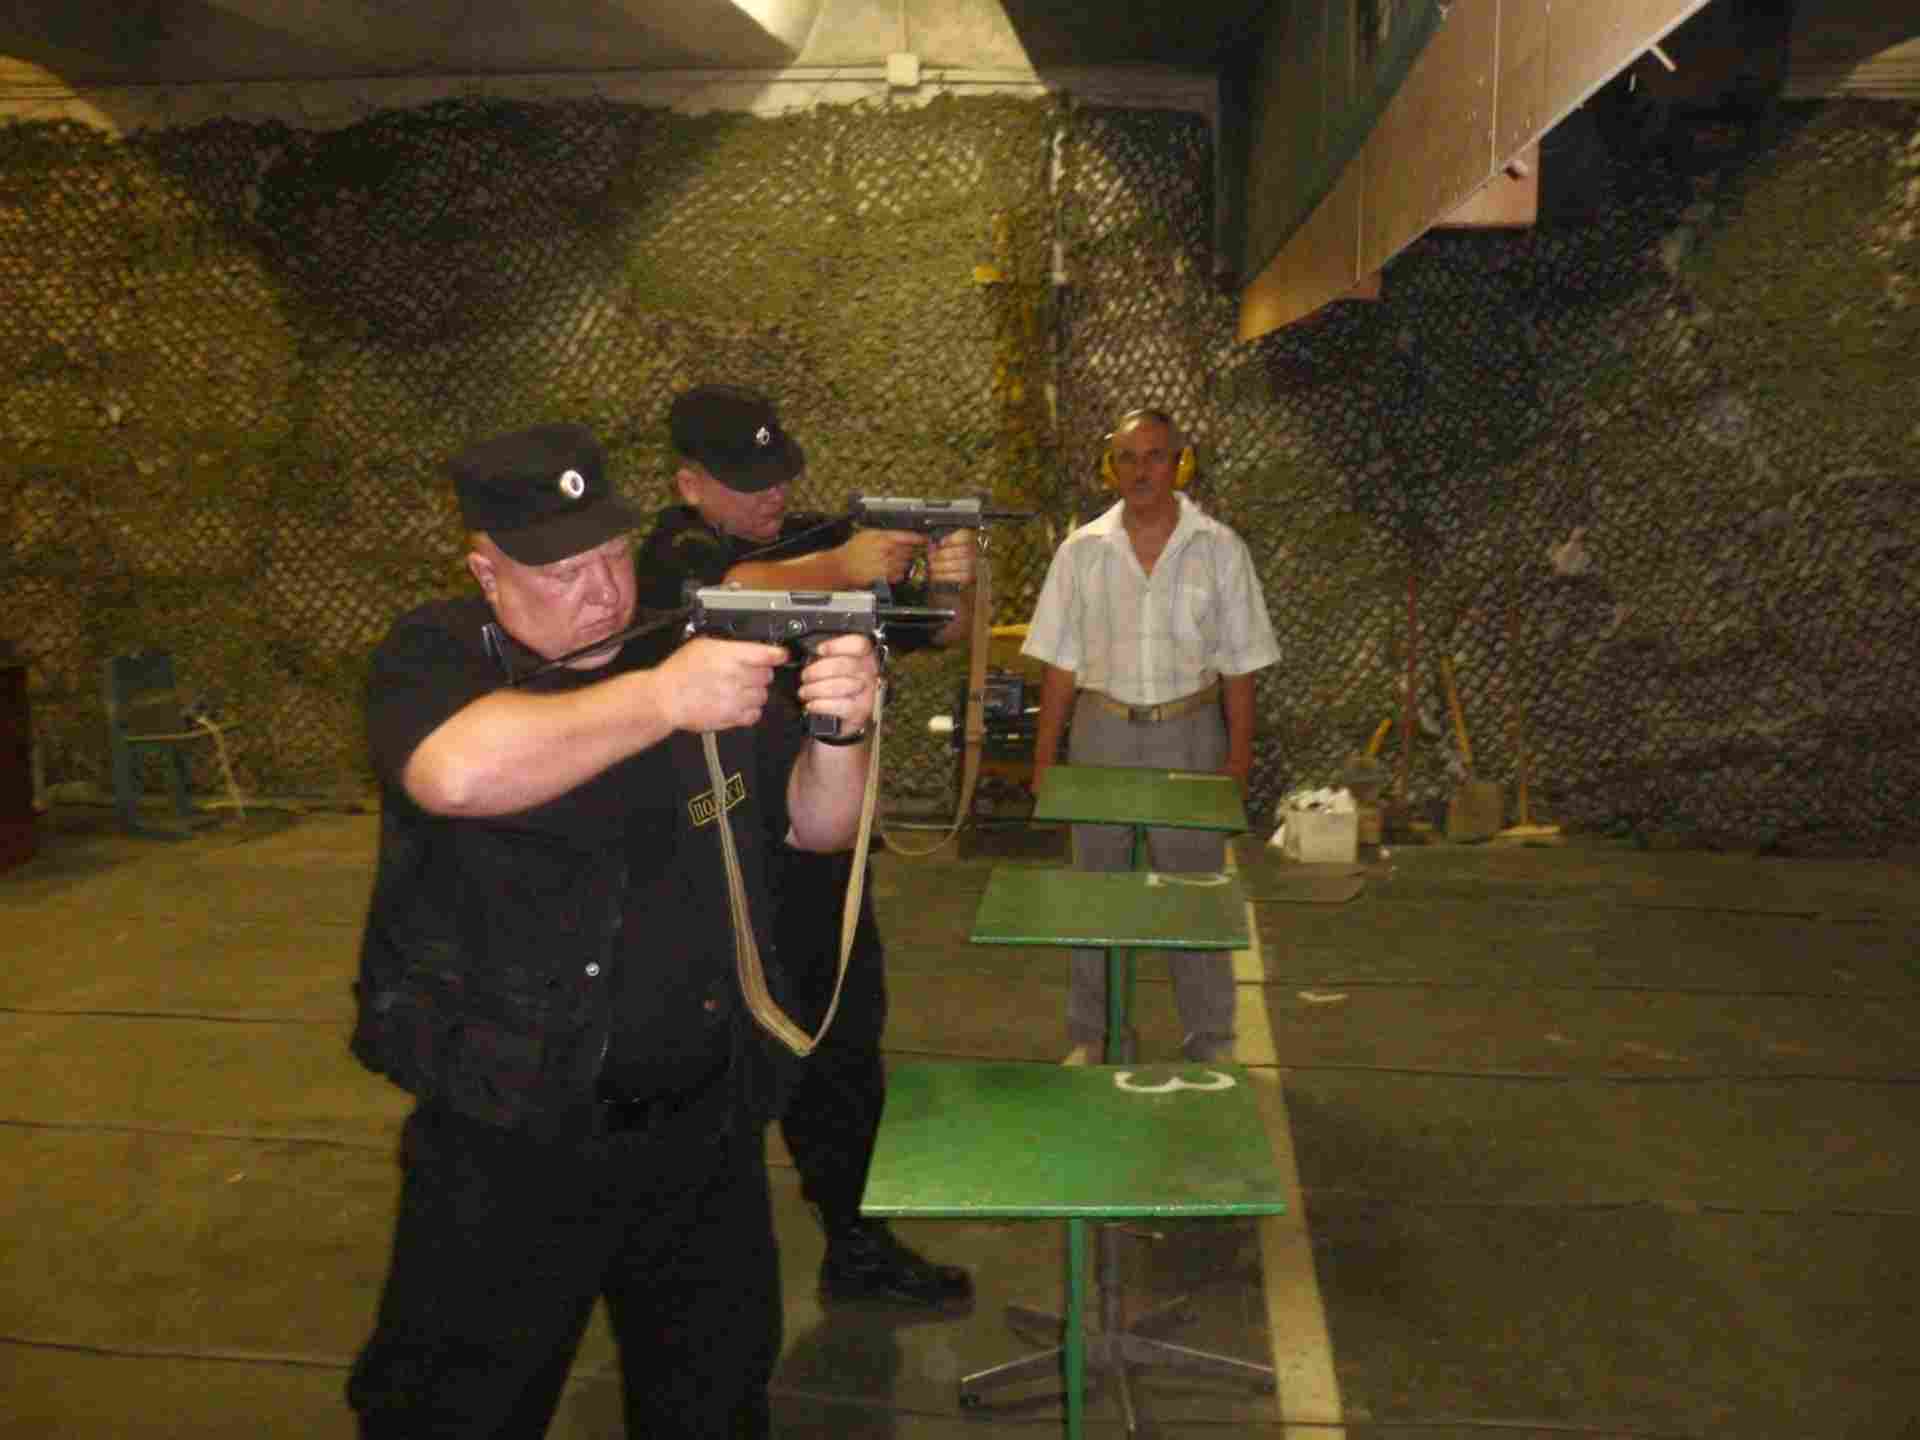 Периодическая проверка охранника с оружием